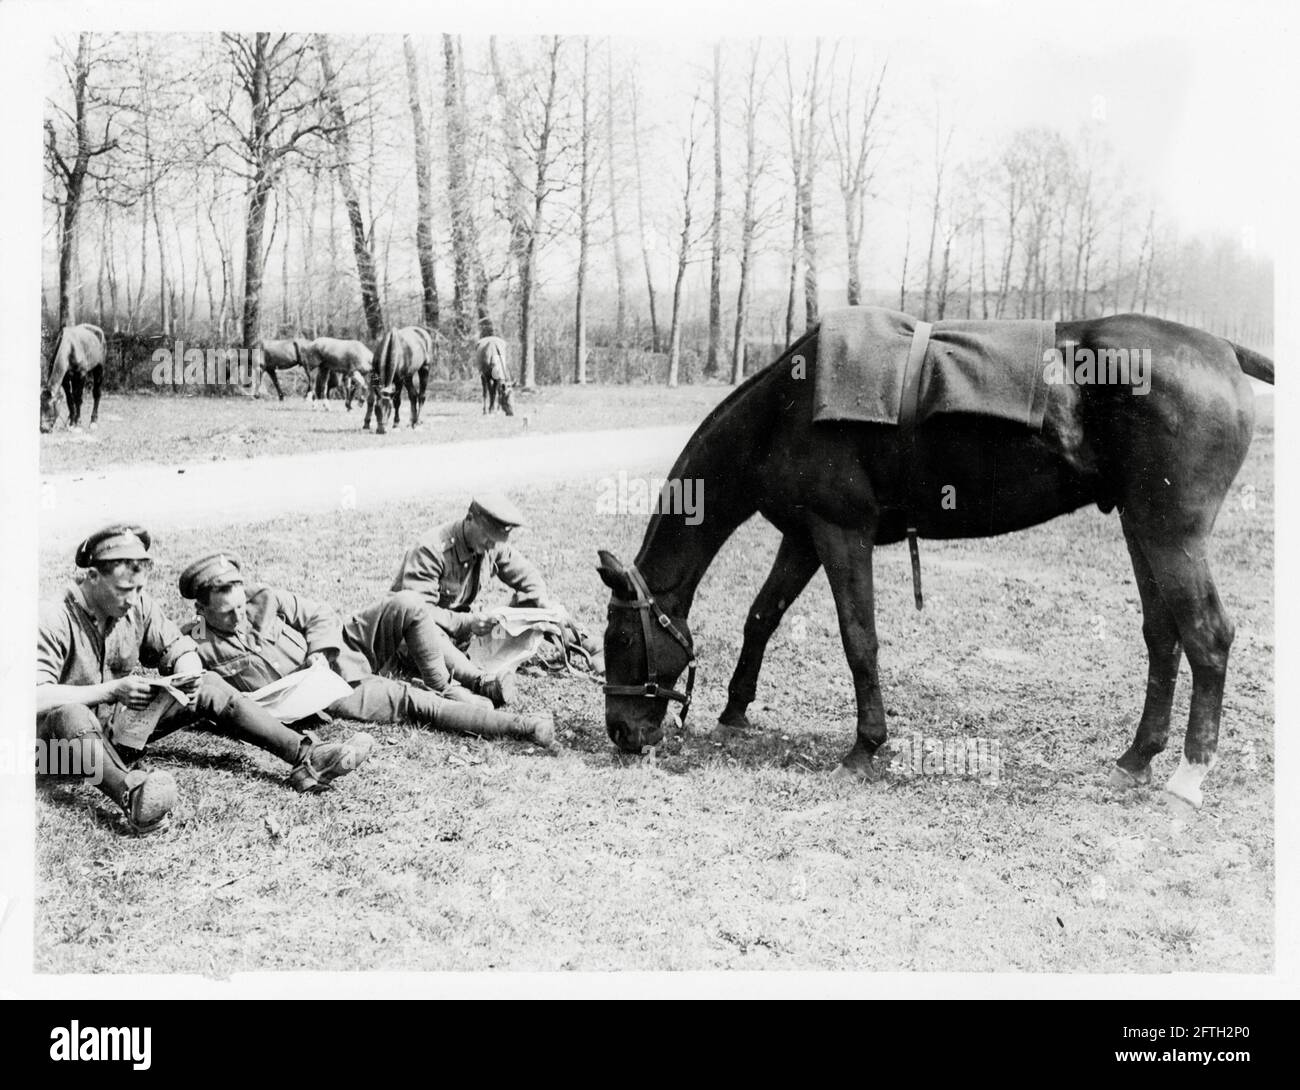 Première Guerre mondiale, première Guerre mondiale, front occidental - les cavalrymen se reposent et graissent leurs chevaux Banque D'Images